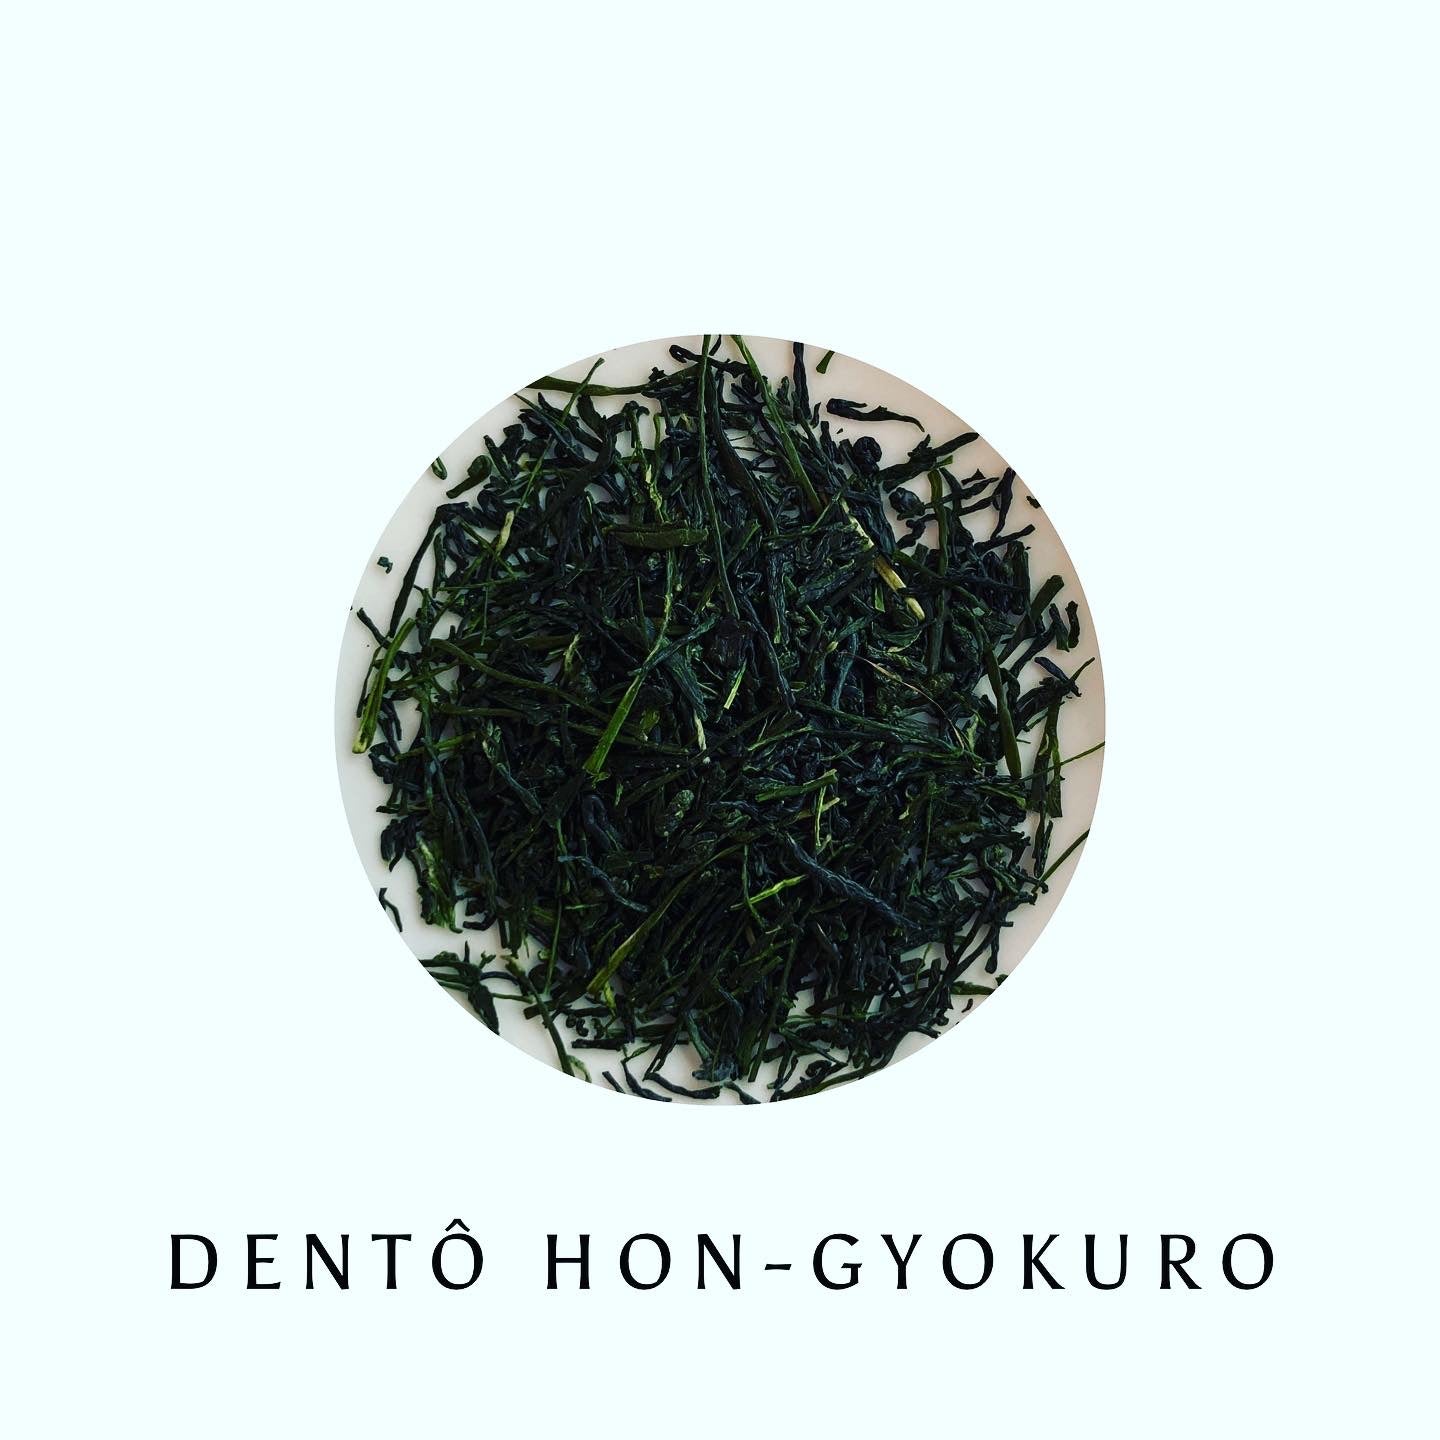 Dentô Hon-gyokuro grand cru 伝統本玉露, 30g